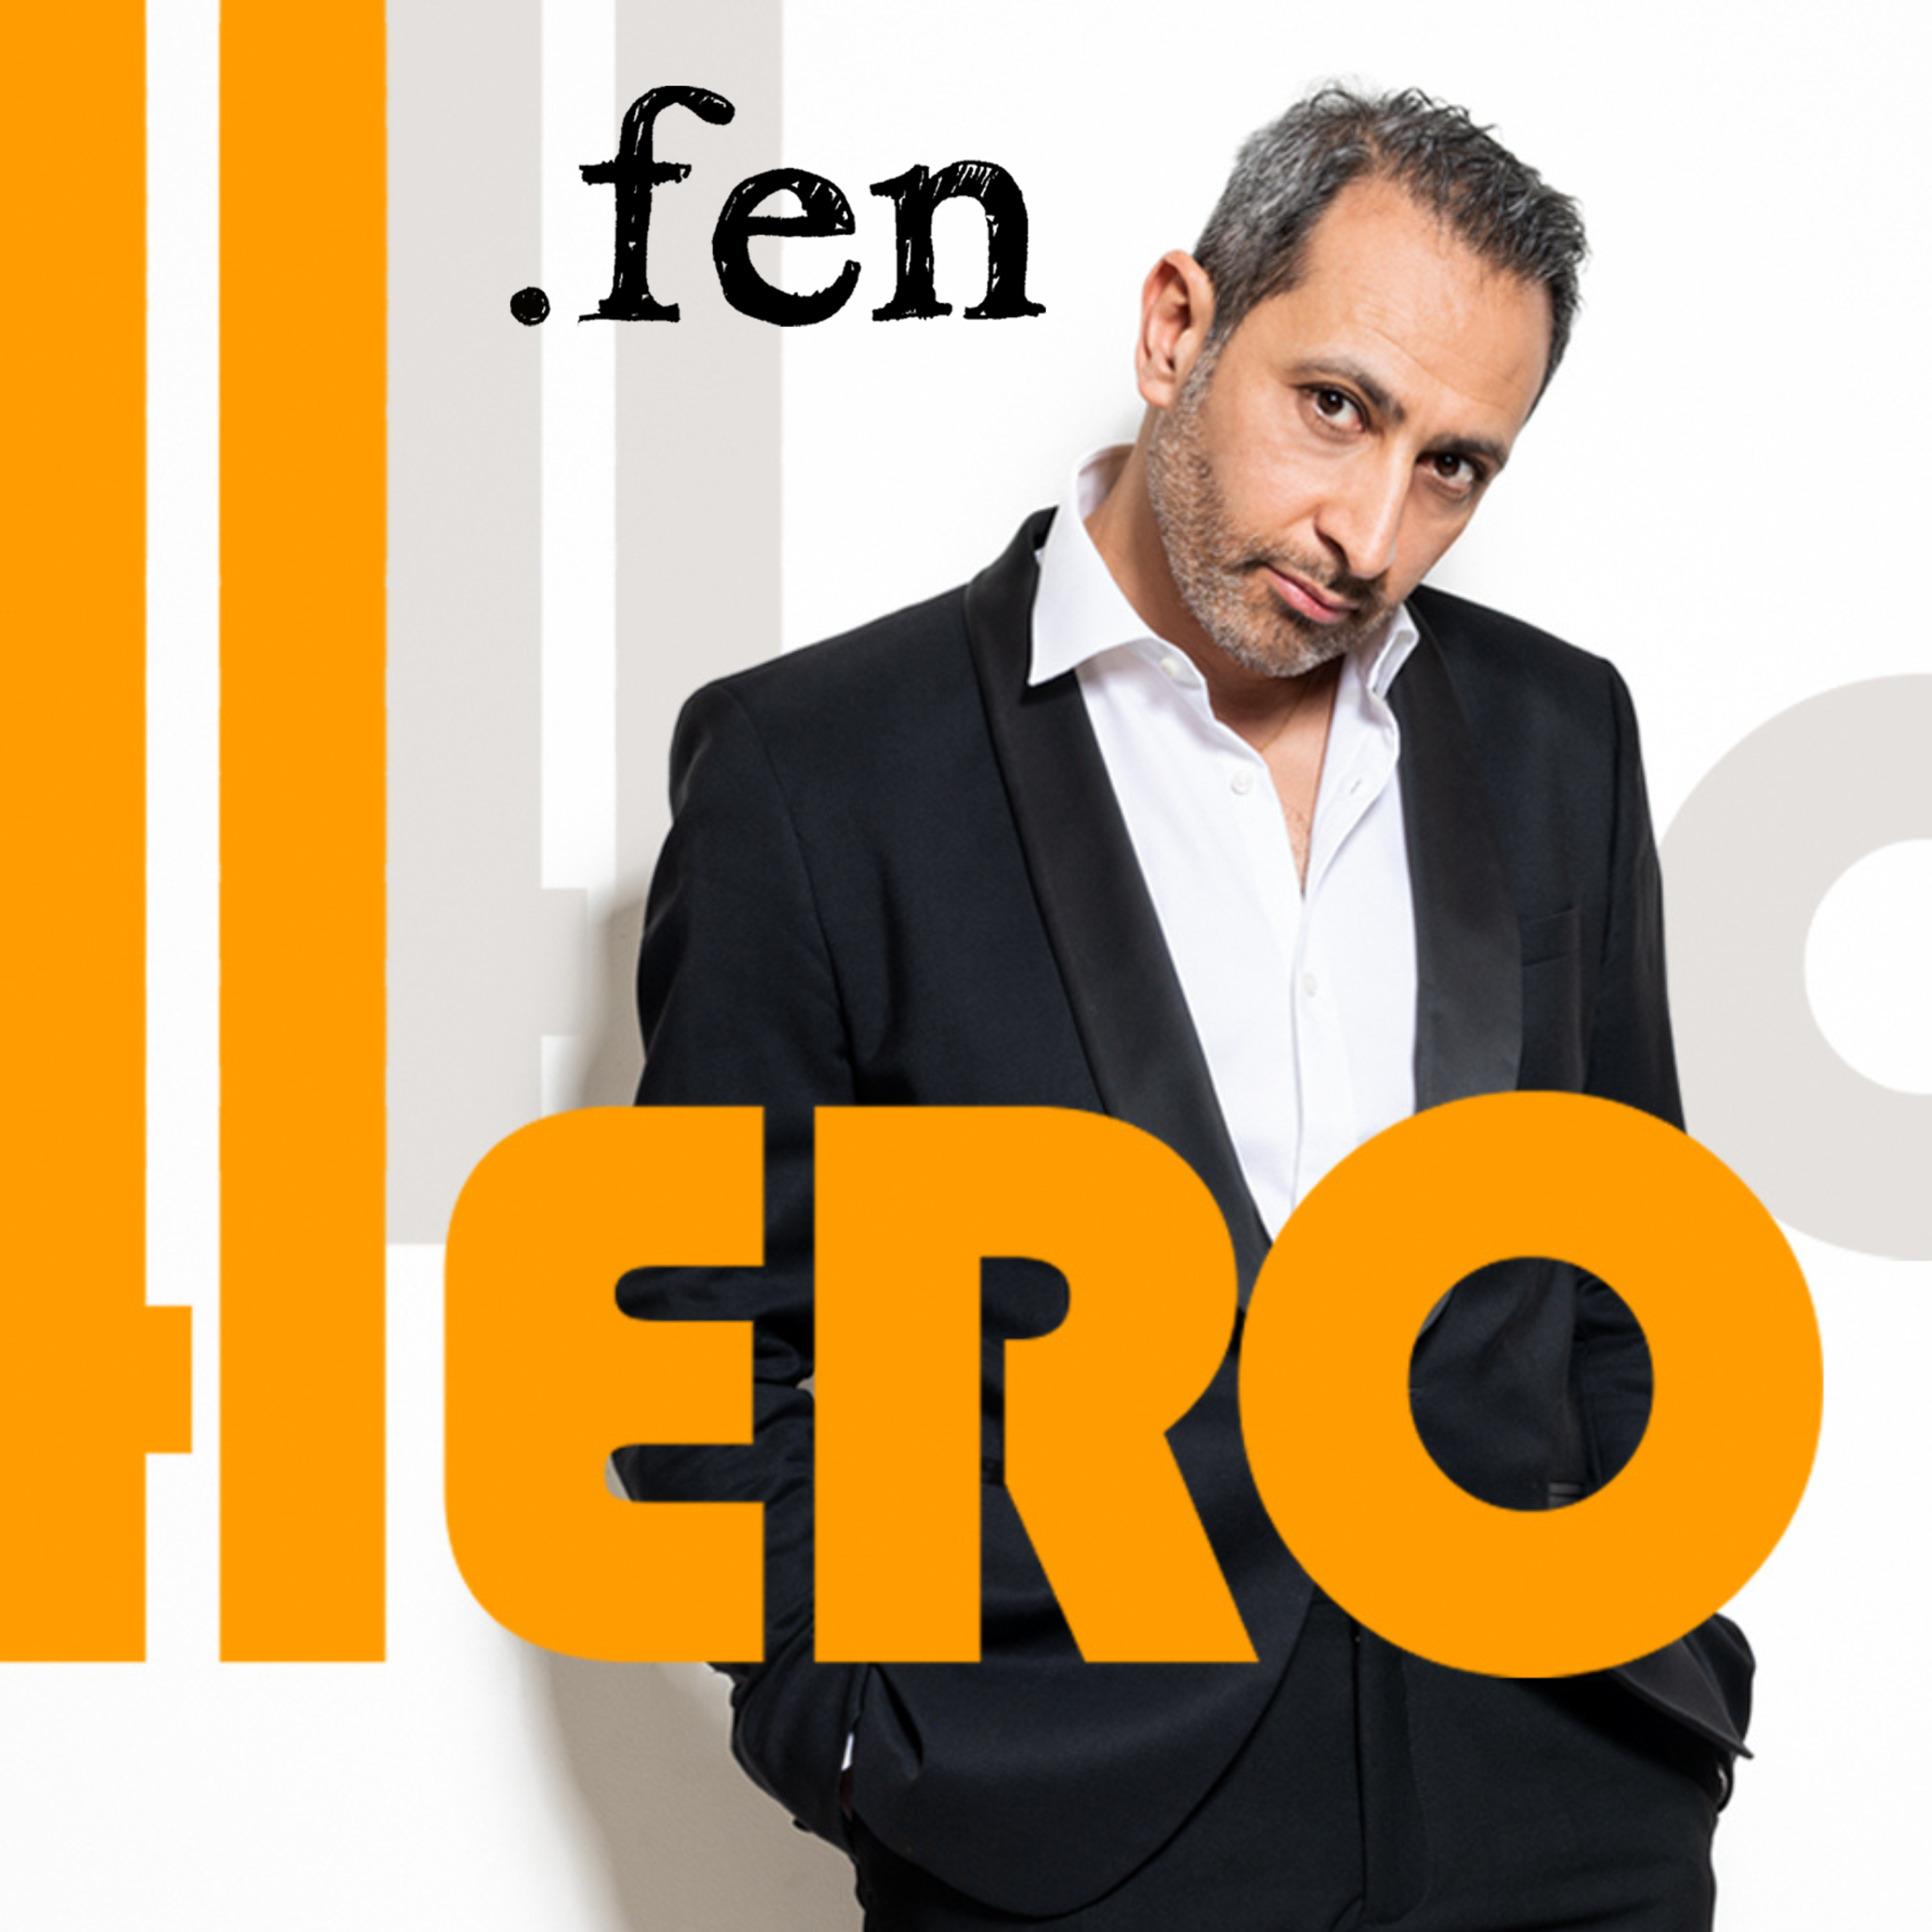 Fen Hero album cover